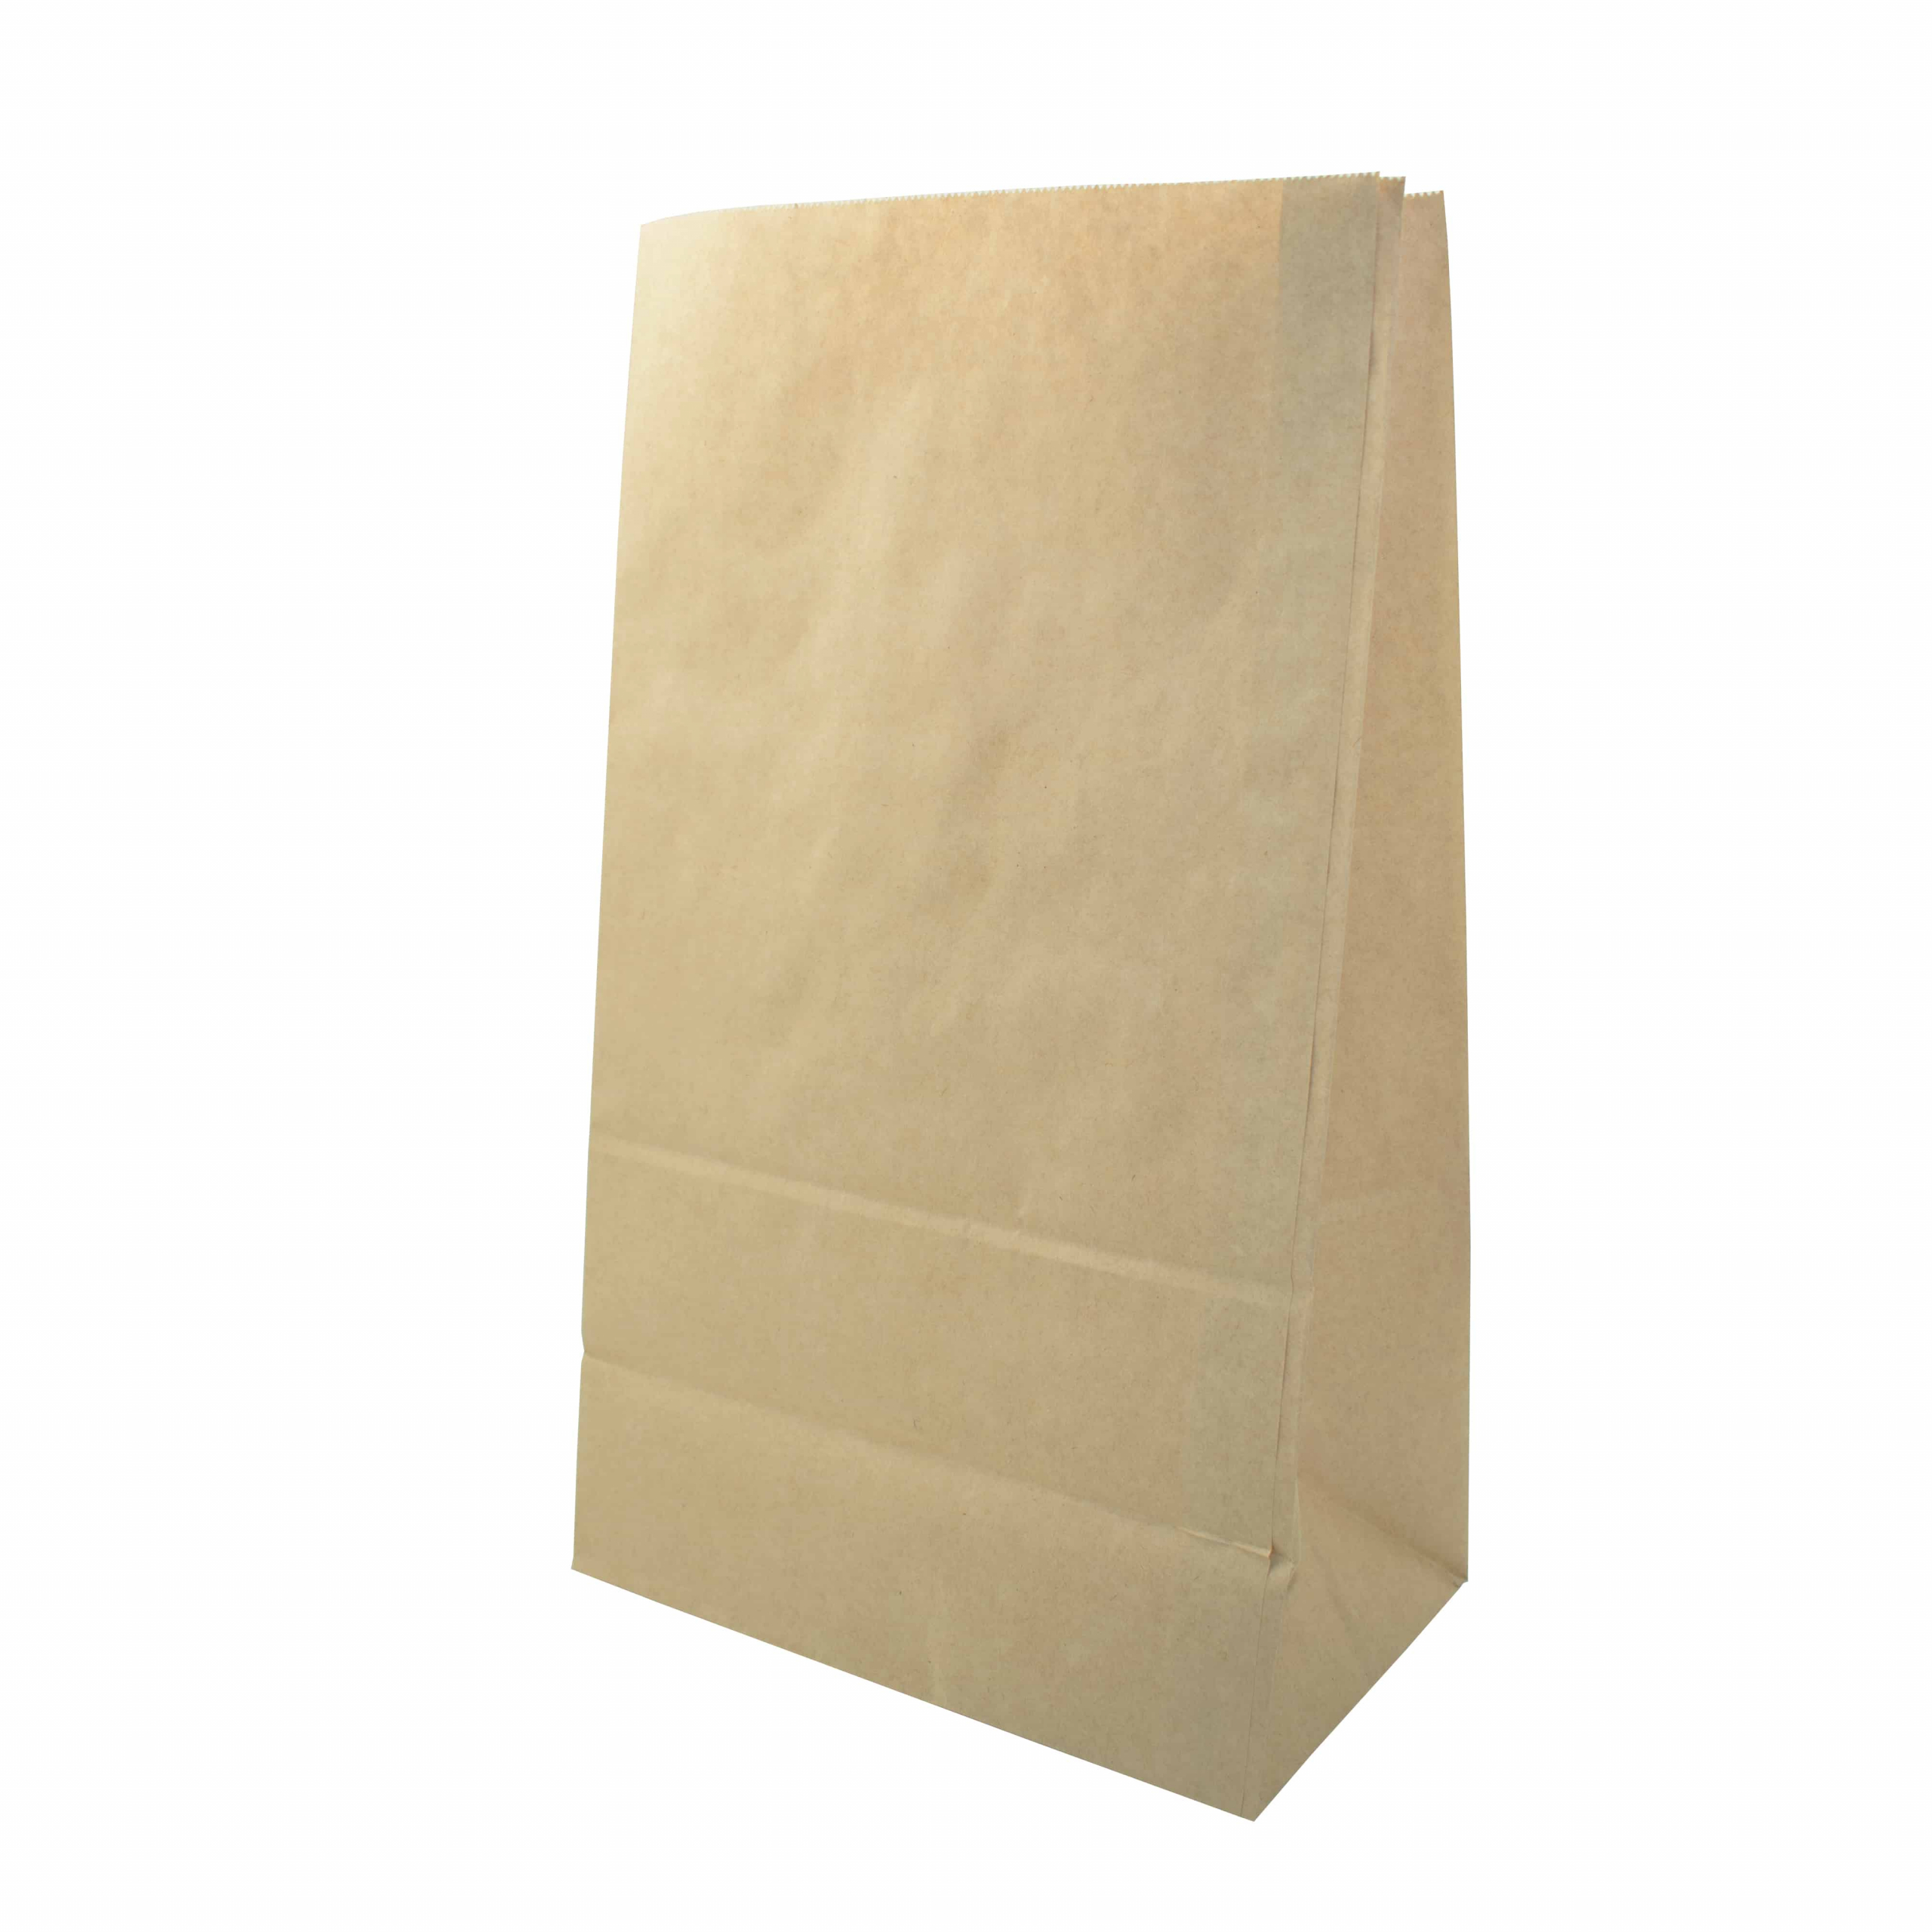 Как сделать Подарочный Пакет из бумаги без клея | Маленький оригами Пакетик Для Подарка